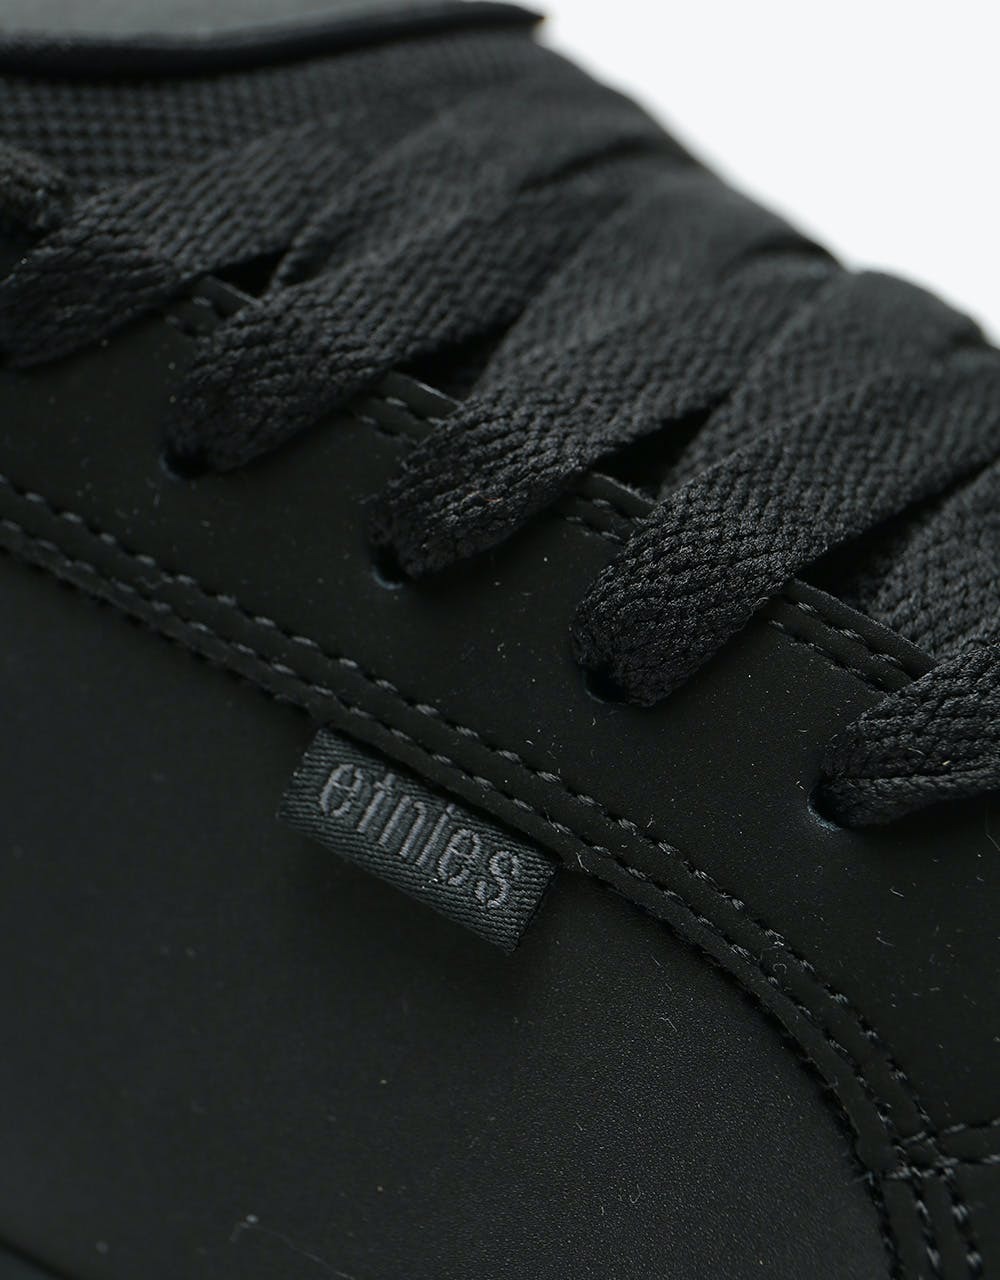 Etnies Fader Skate Shoes - Black/Dirty/Wash